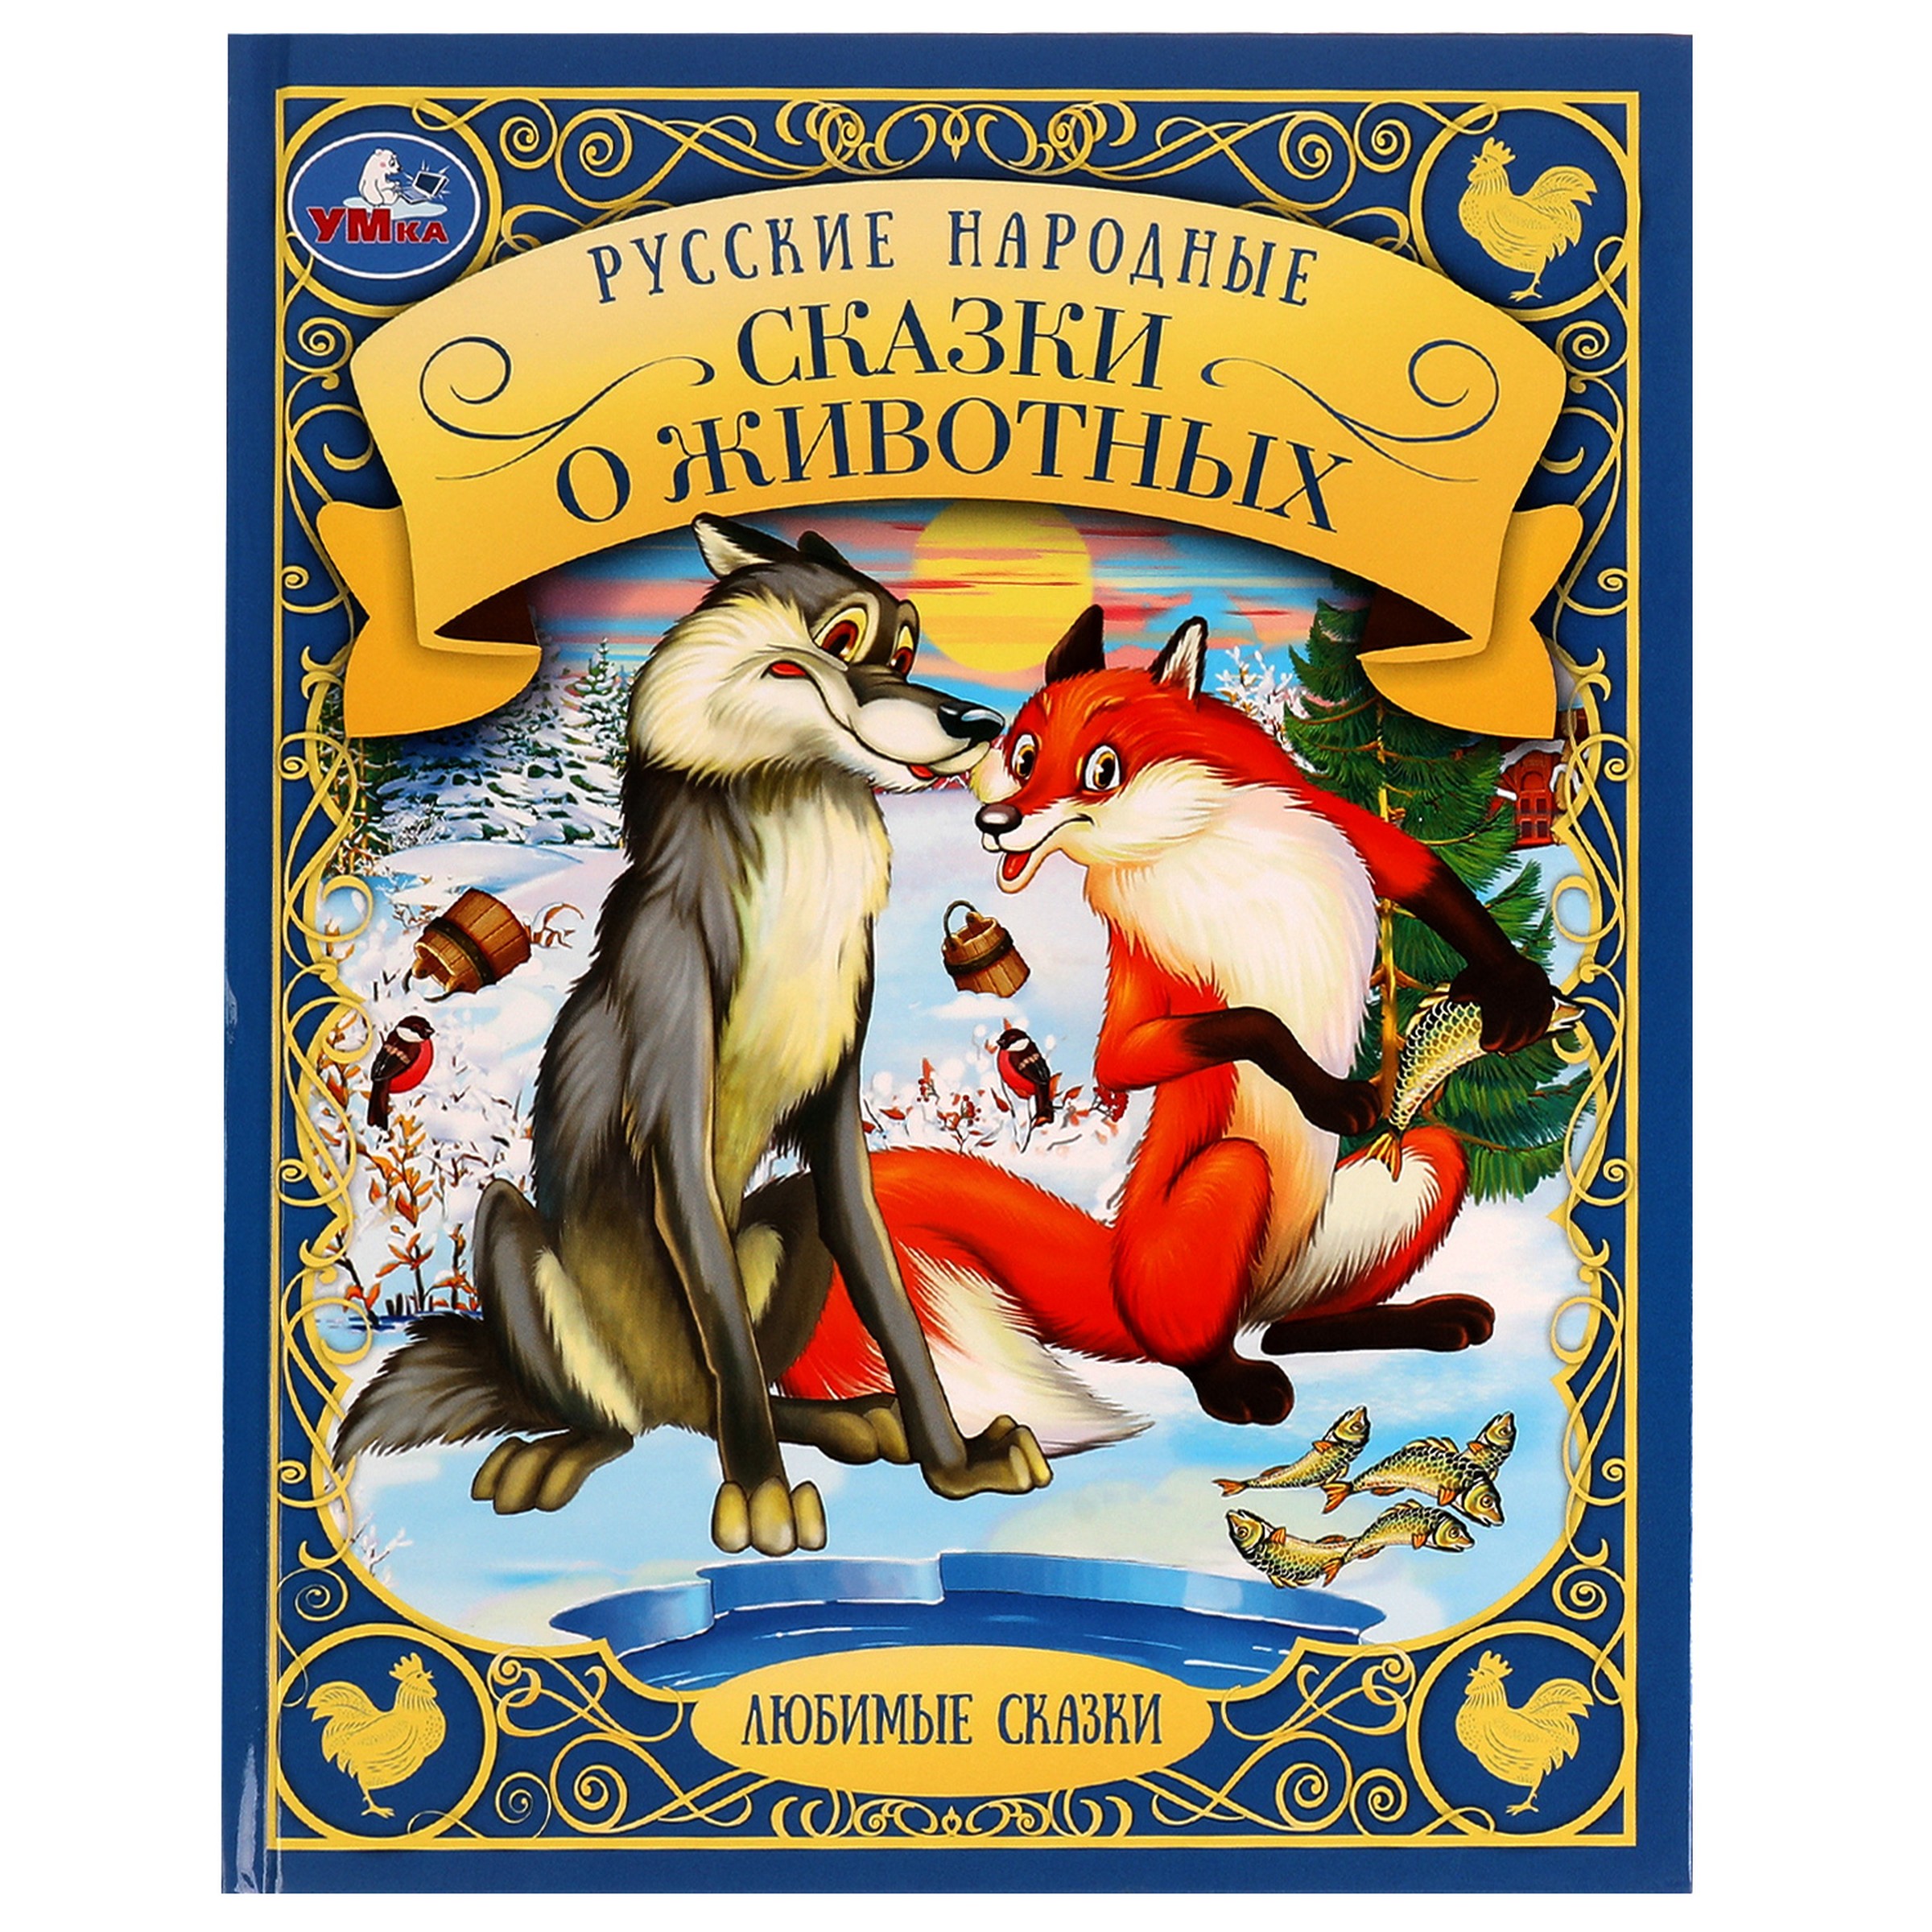 Любимые сказки. Русские народные сказки о животных русские сказки проказница лиса